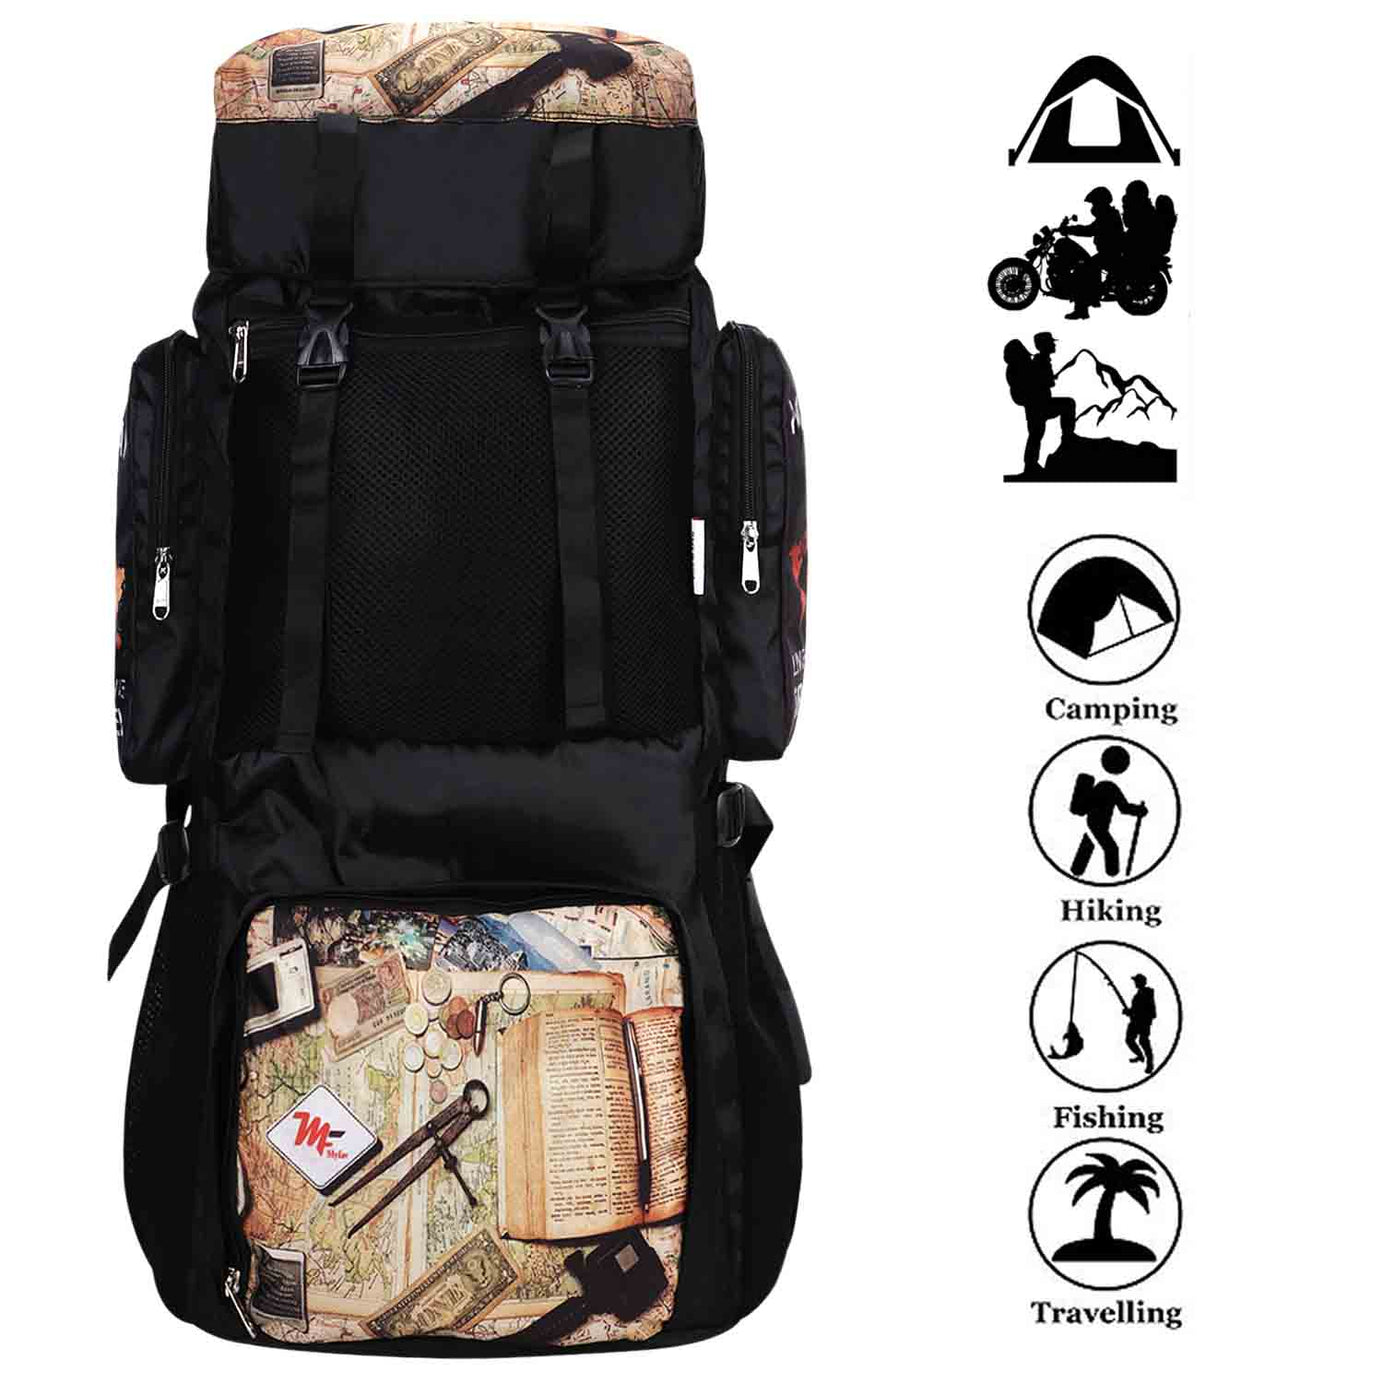 My Fav 70 Ltr Travel Backpack Hiking Trekking Rucksack Bag